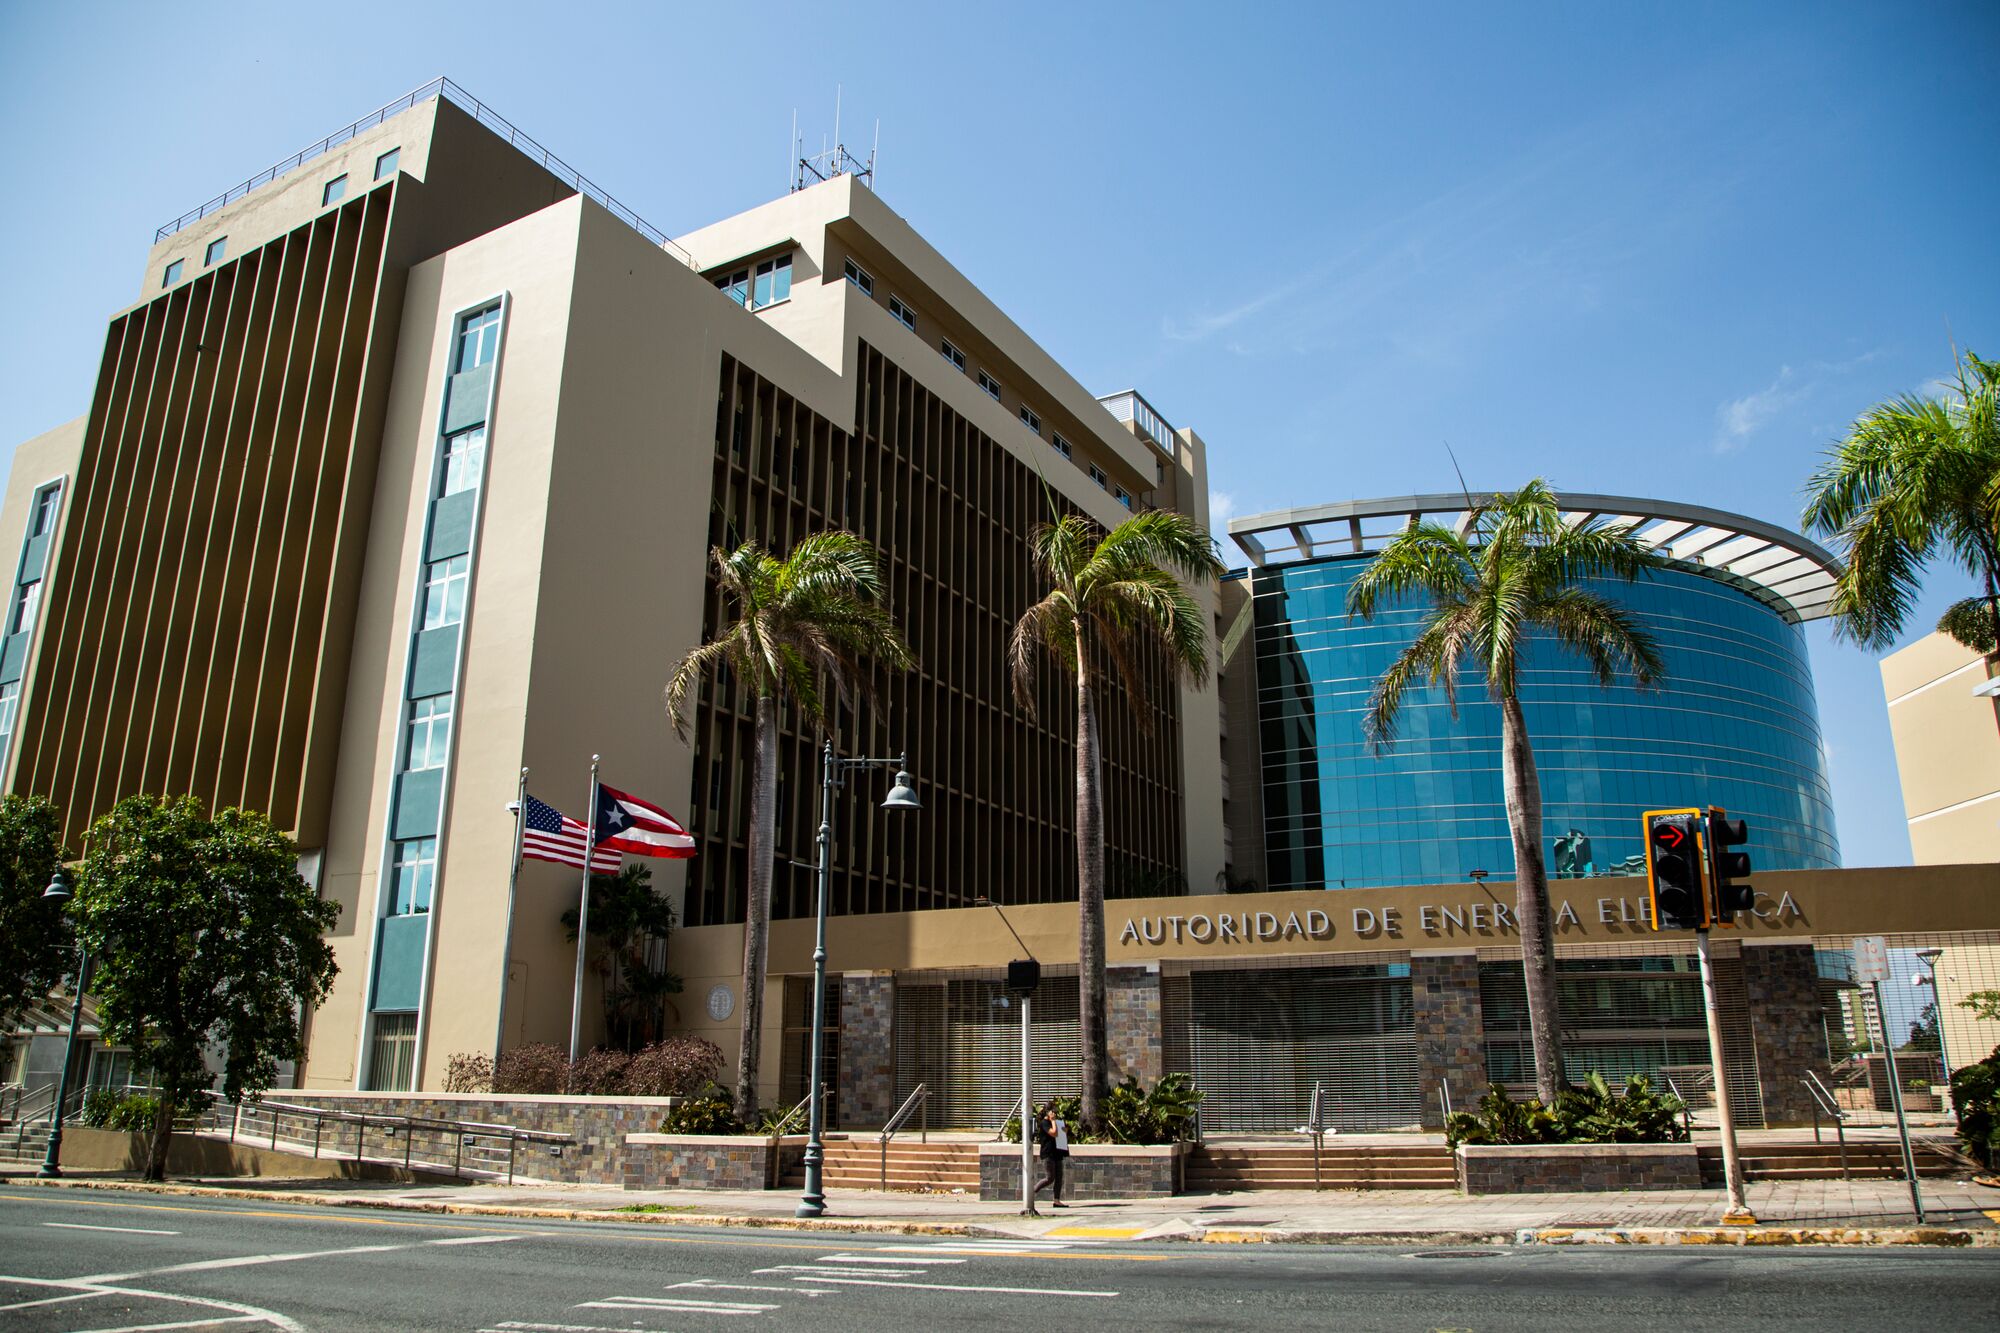 Edificio sede de la Autoridad de Energía Eléctrica de Puerto Rico (AEE) en Santurce, San Juan.